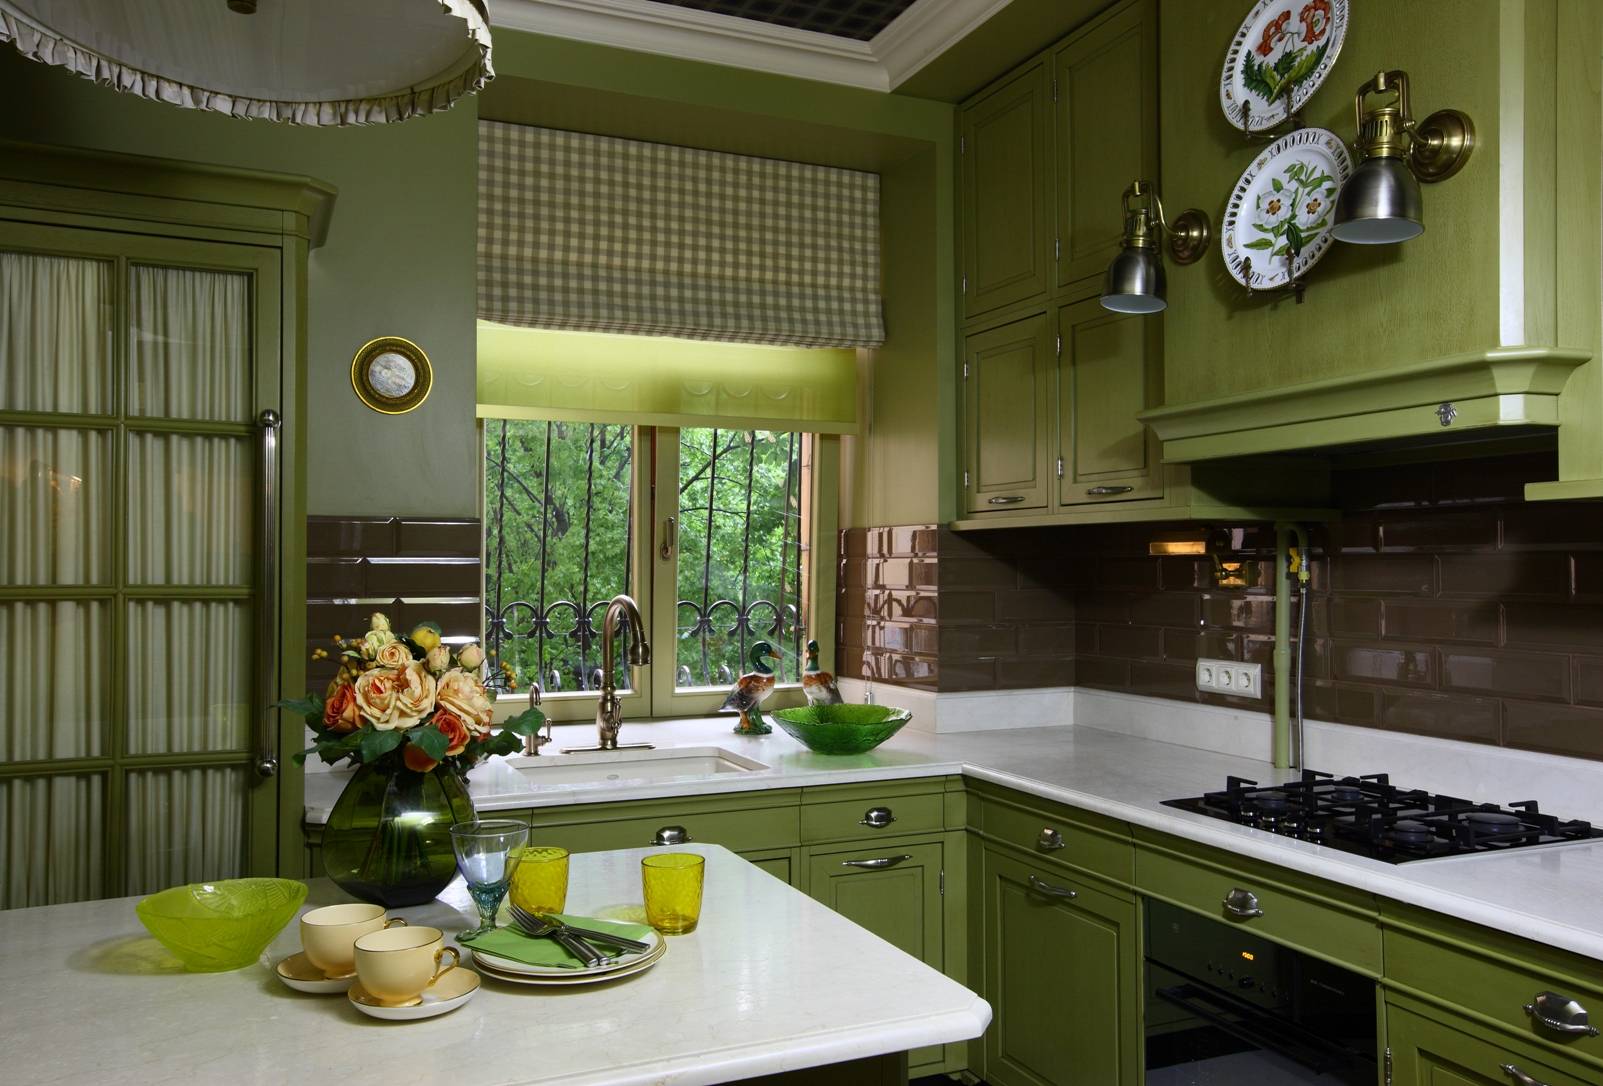 Кухня в деревянном доме: советы дизайнеров, 80 реальных фото интерьеров